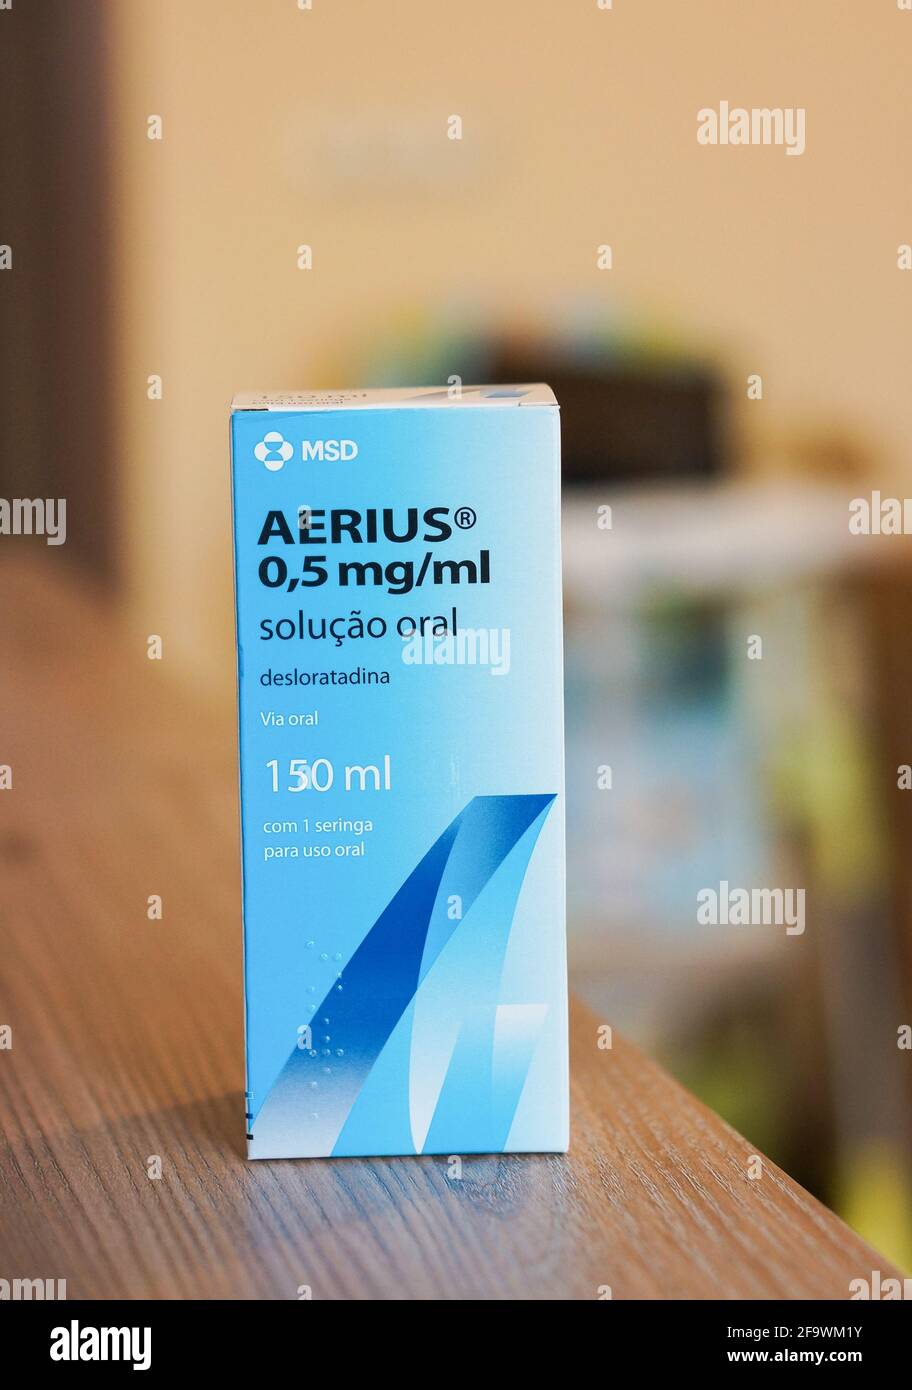 POZNAN, POLEN - 07. Apr 2016: MSD Aerius Anti-Allergie-Sirup-Medikament in  einer Kiste auf dem Tisch Stockfotografie - Alamy